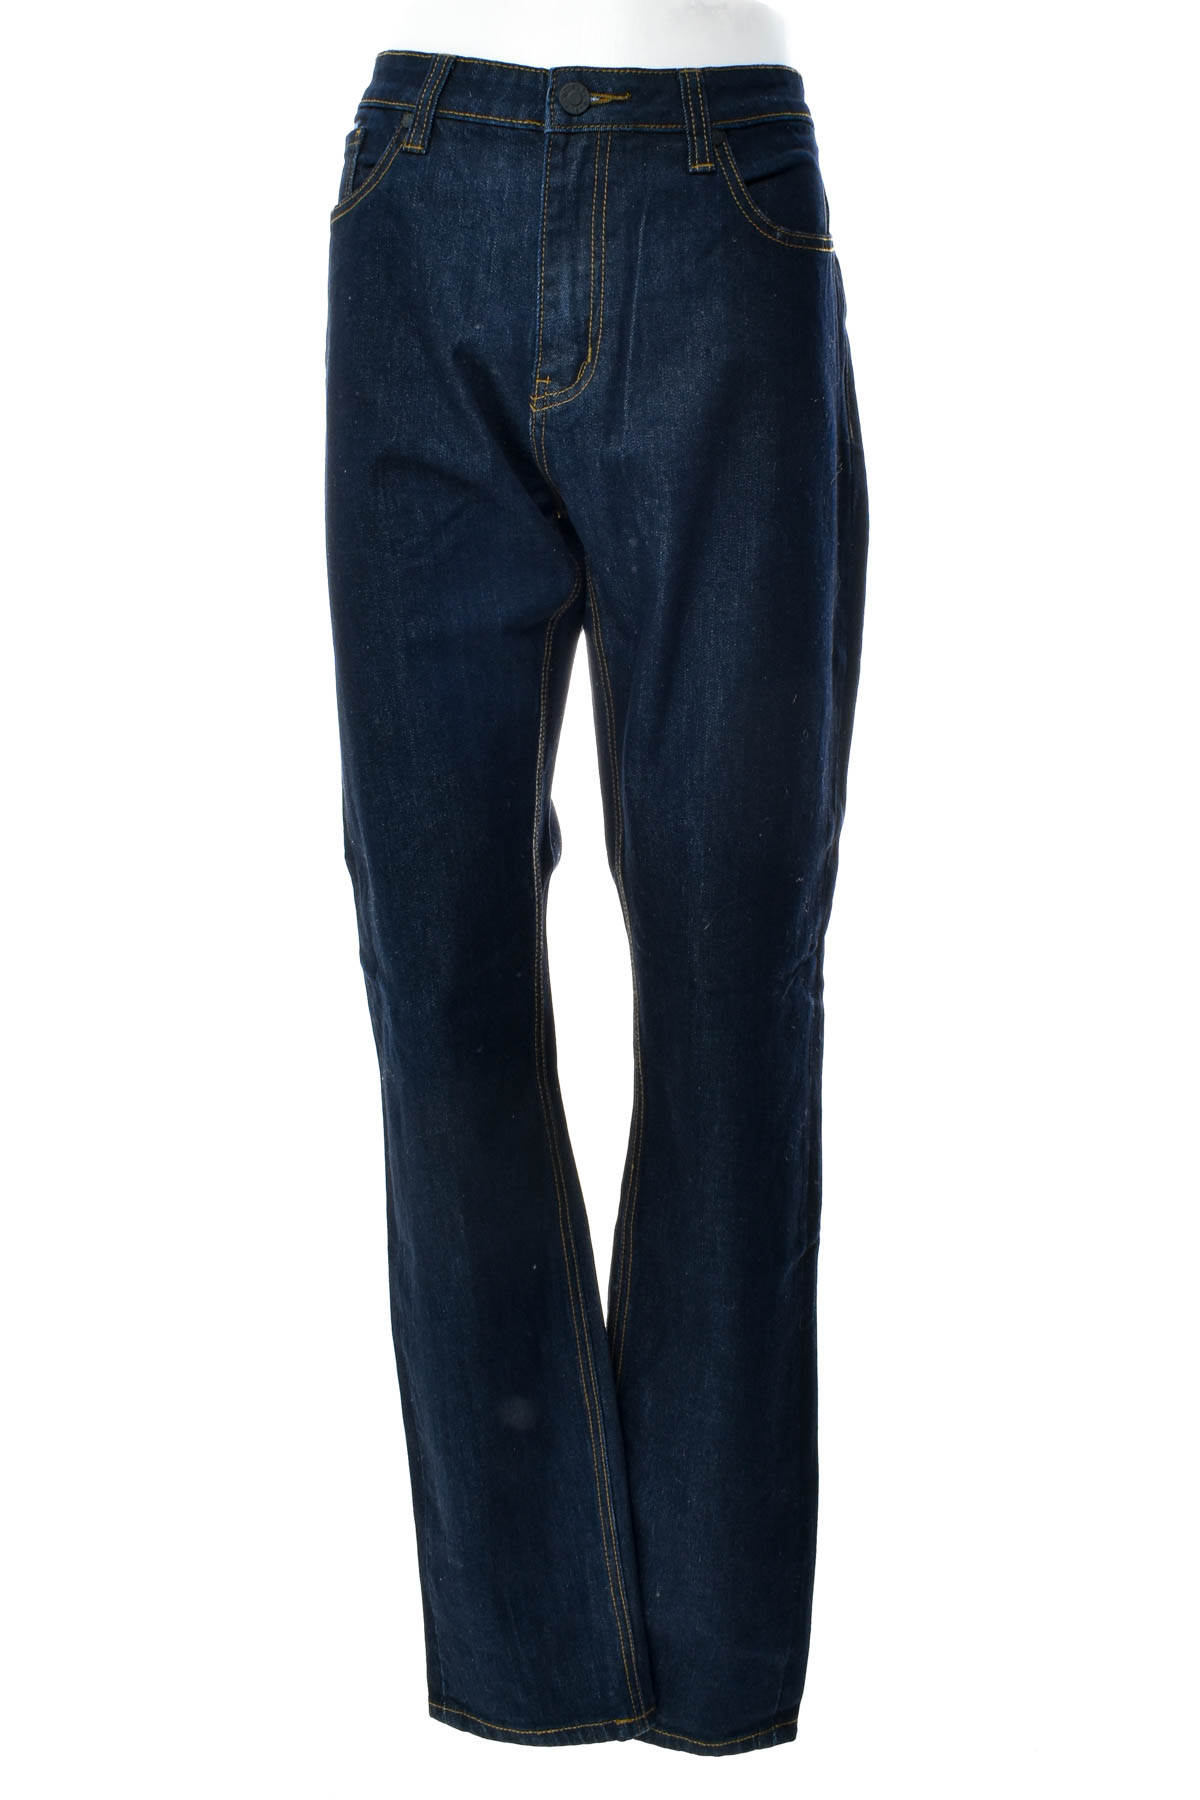 Men's jeans - OTTO - 0